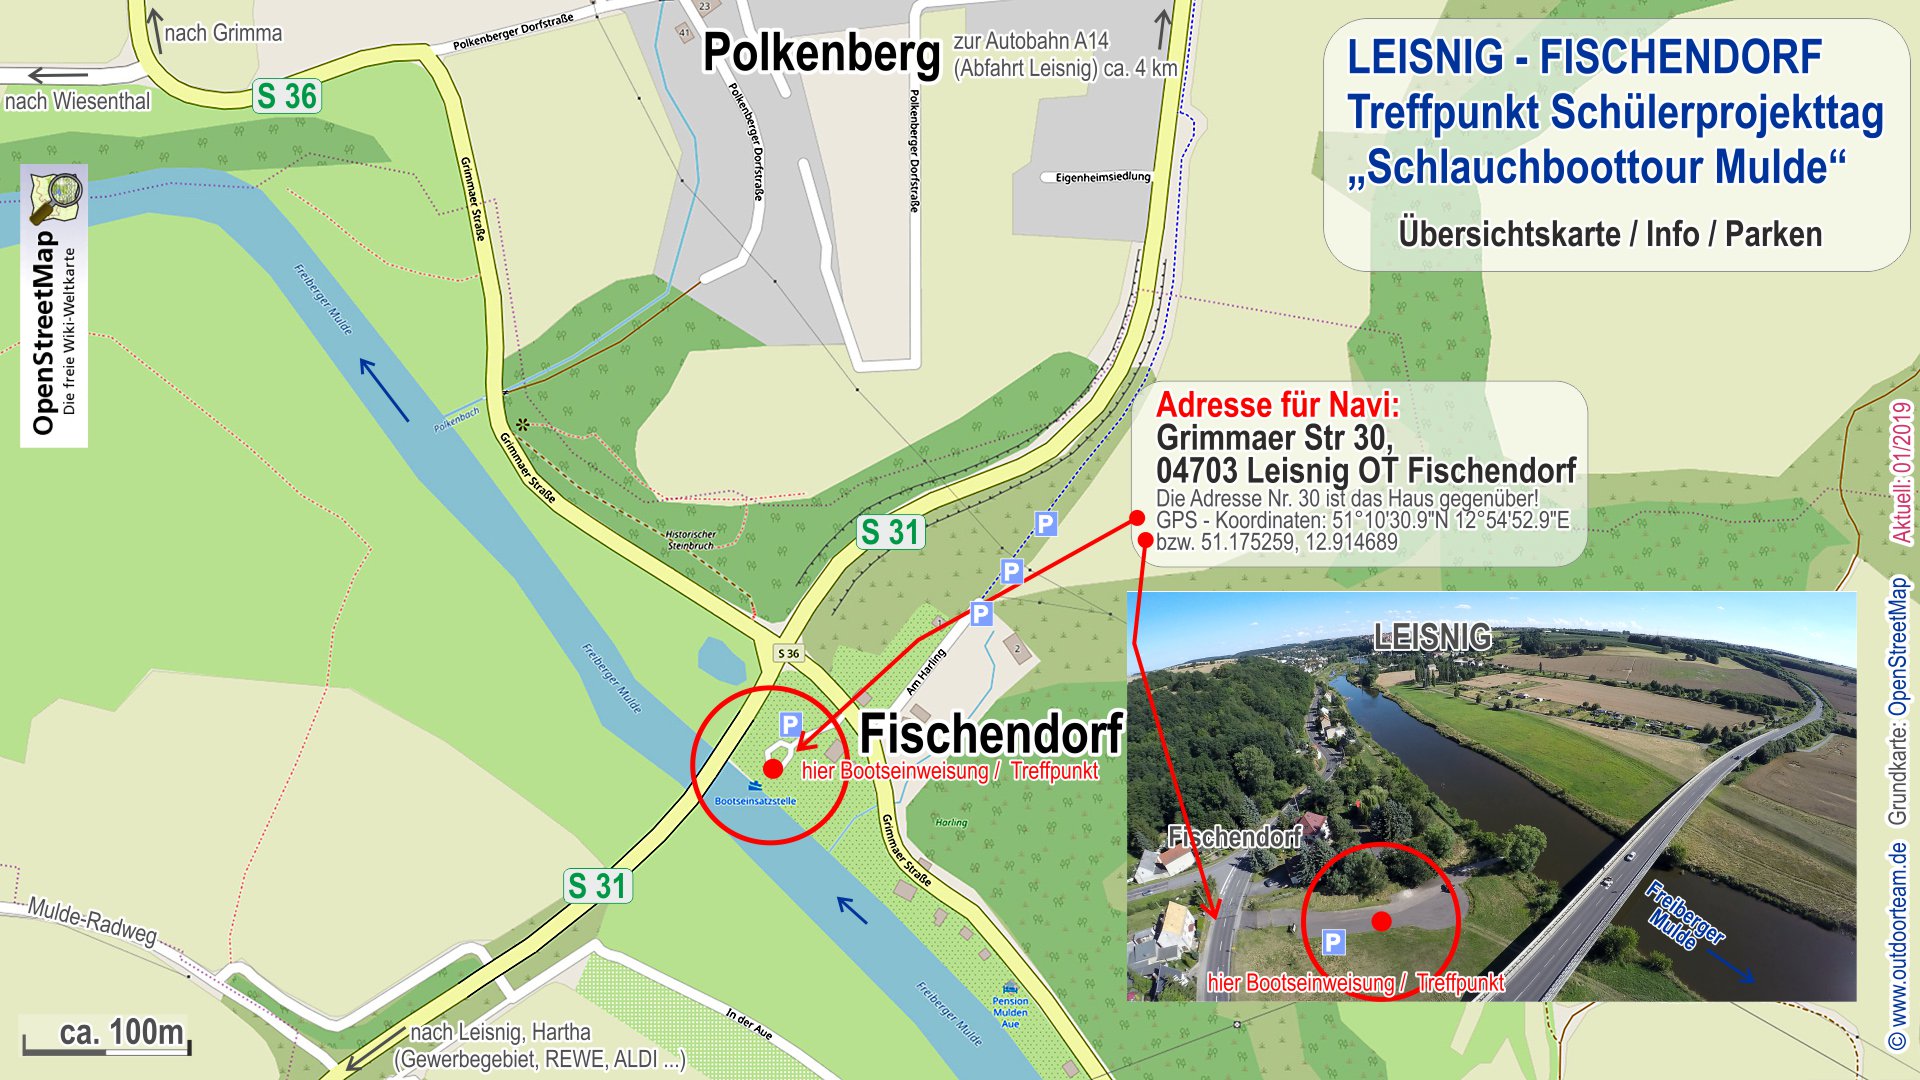 Treffpunkt und Beginn des Schüler-Projekttages an der öffentlichen Bootseinsatzstelle in Leisnig - Fischendorf.